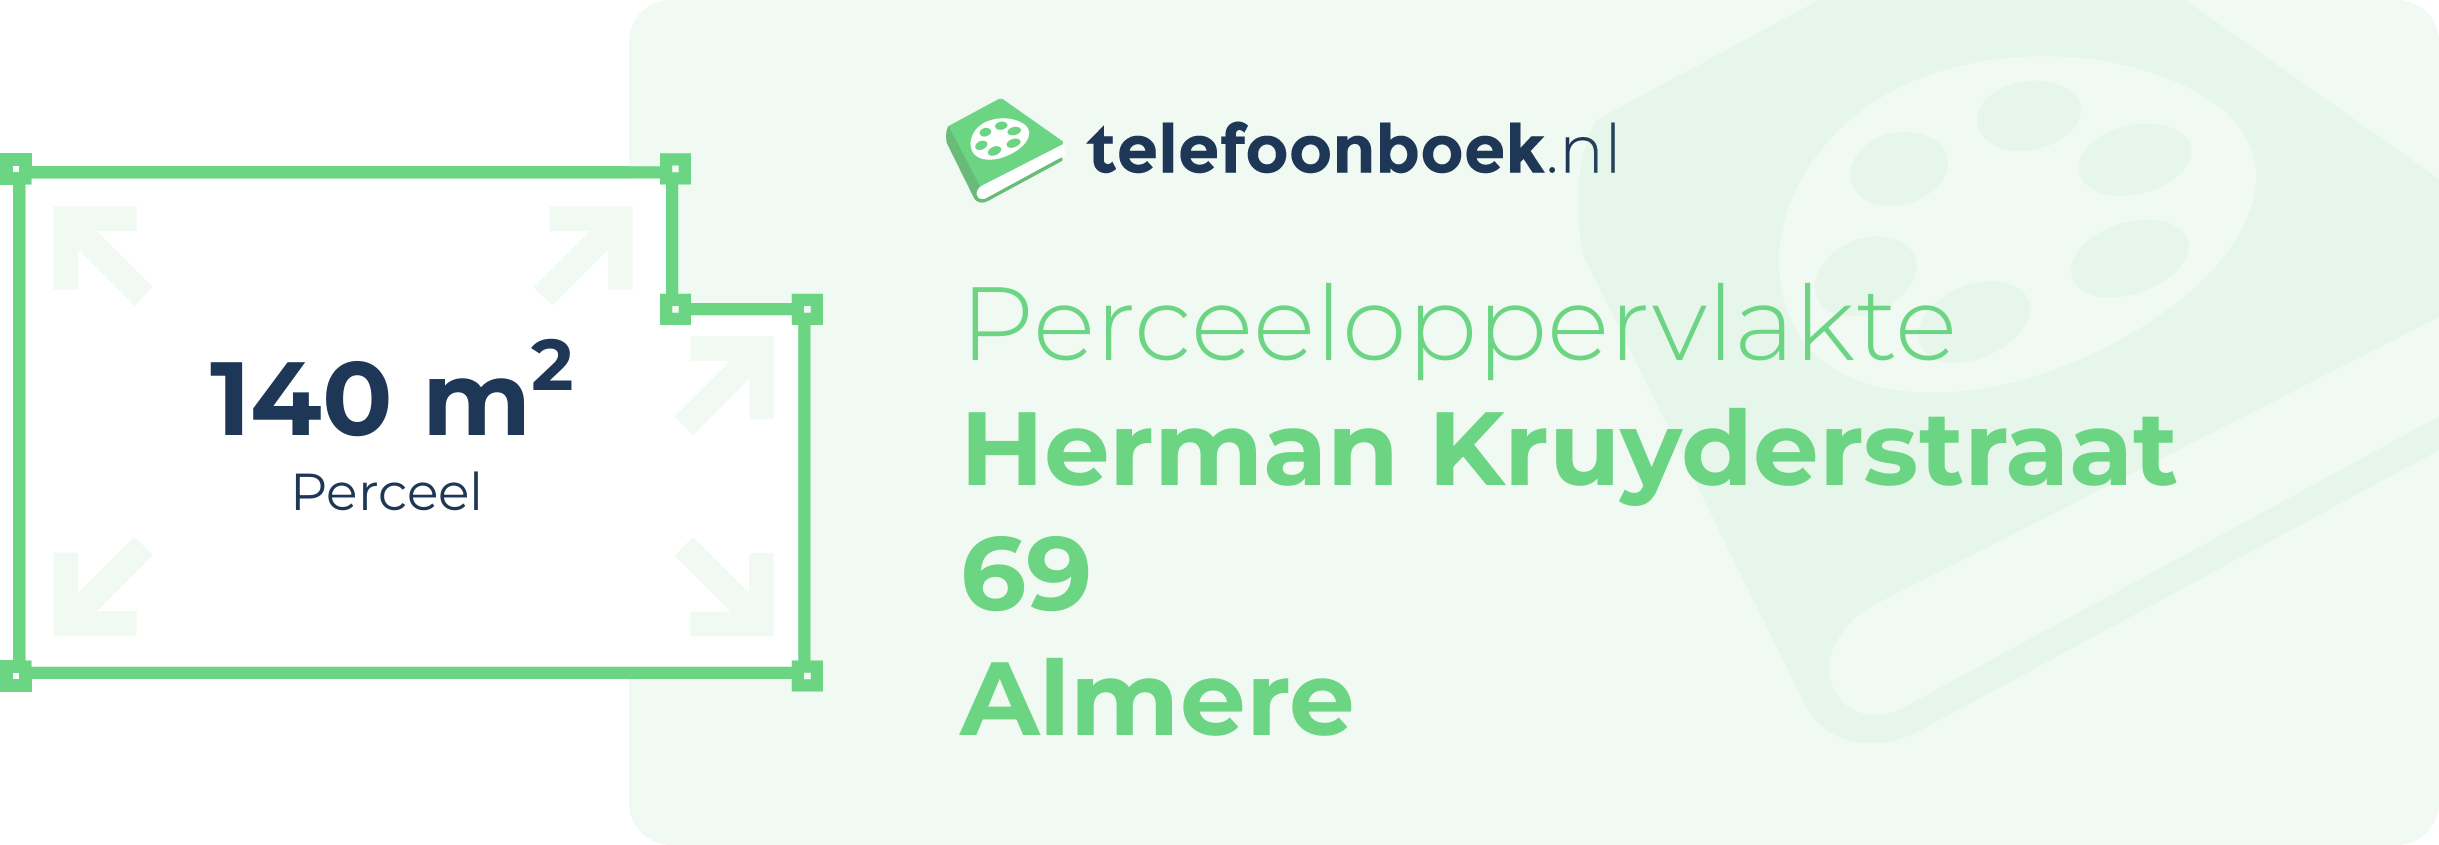 Perceeloppervlakte Herman Kruyderstraat 69 Almere